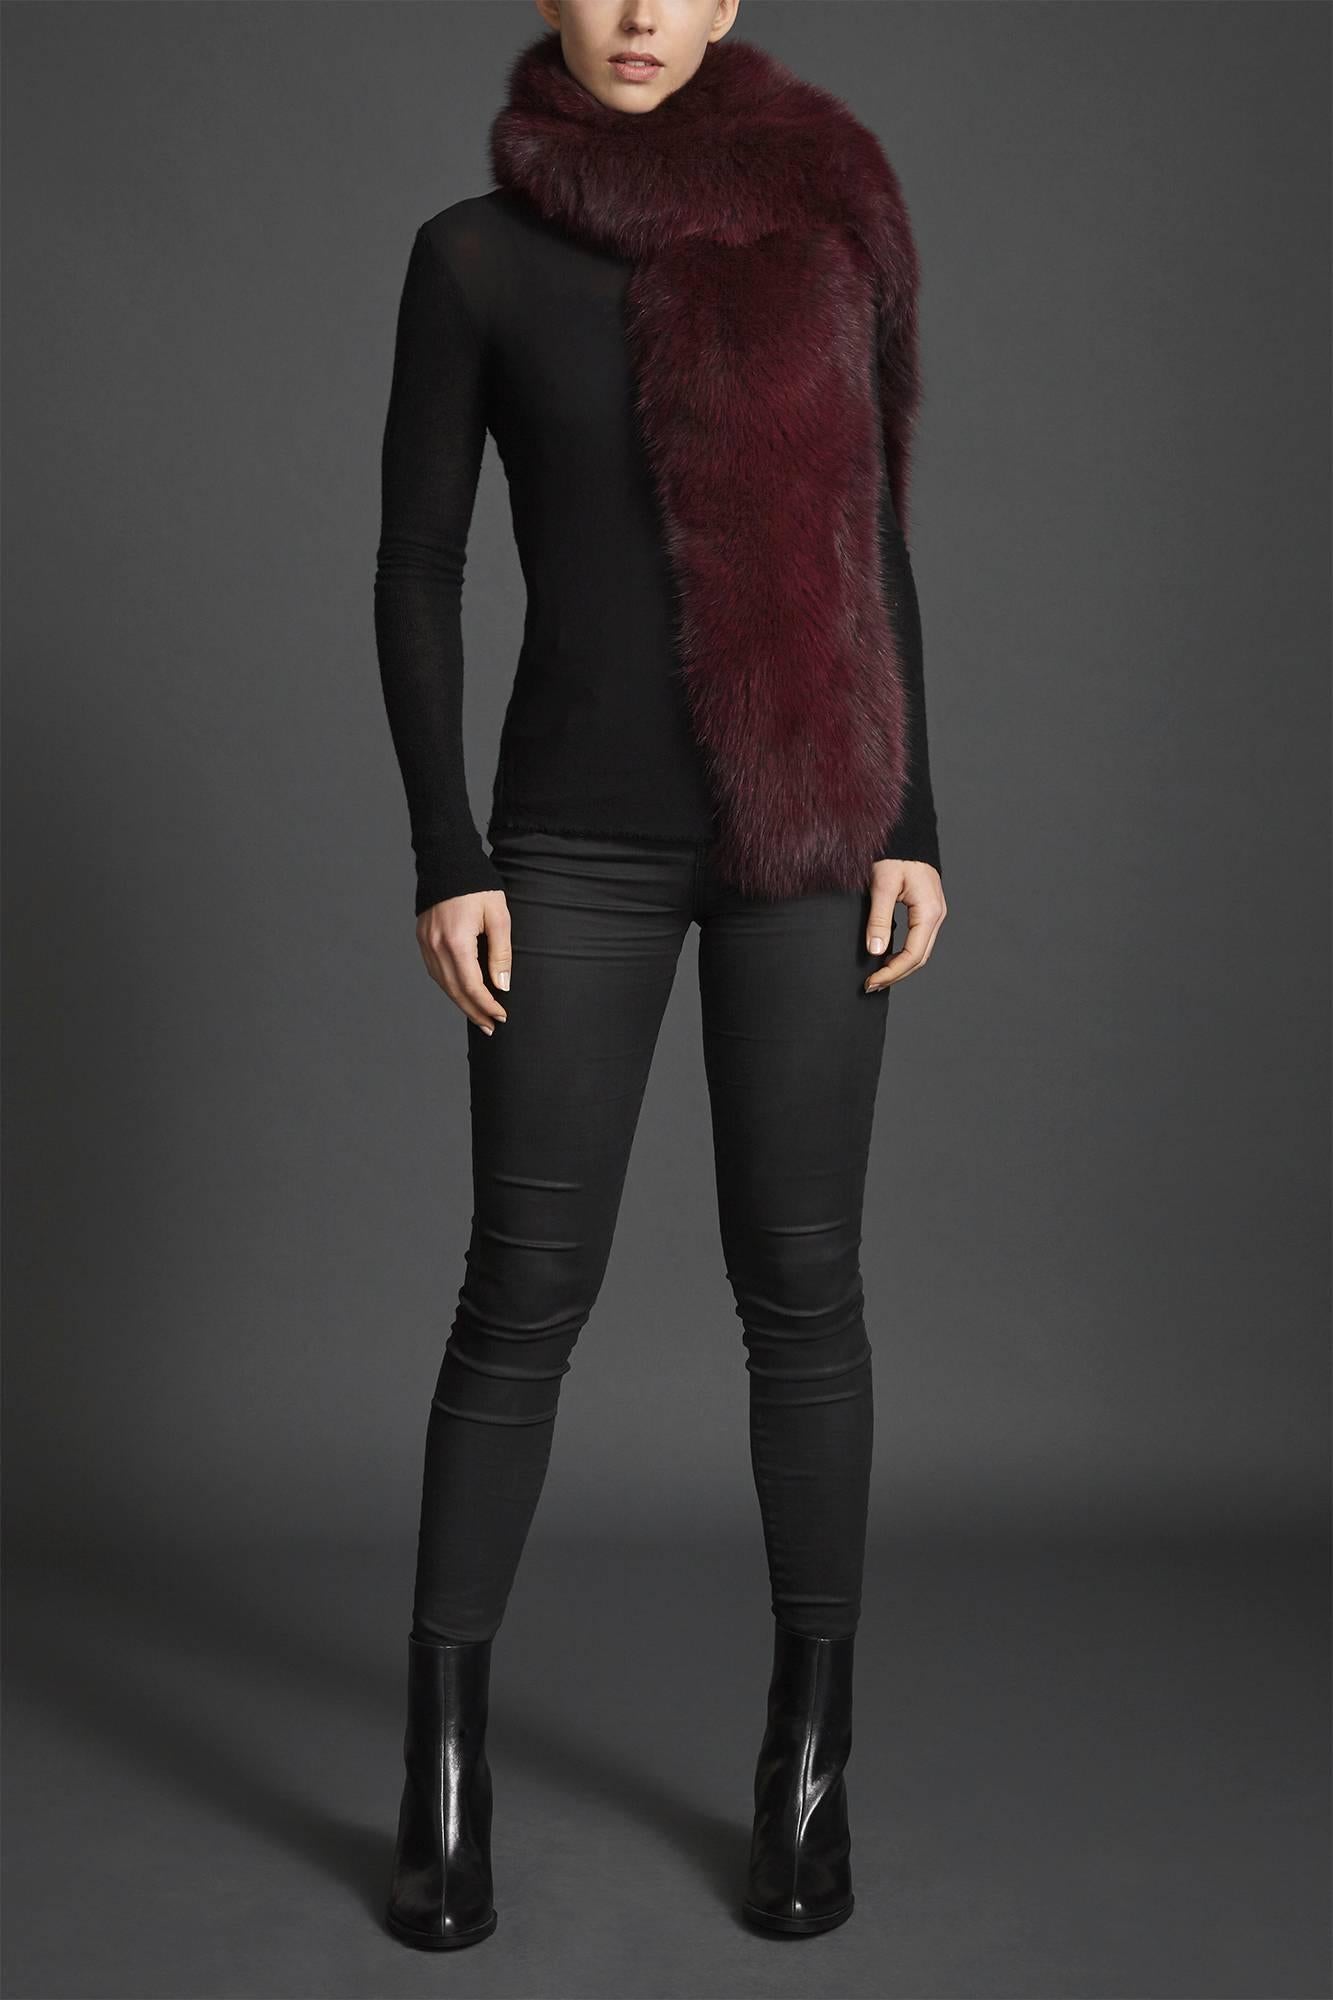 Verheyen London Legacy Stole Collar in Garnet Burgundy Fox Fur - Brand New  4